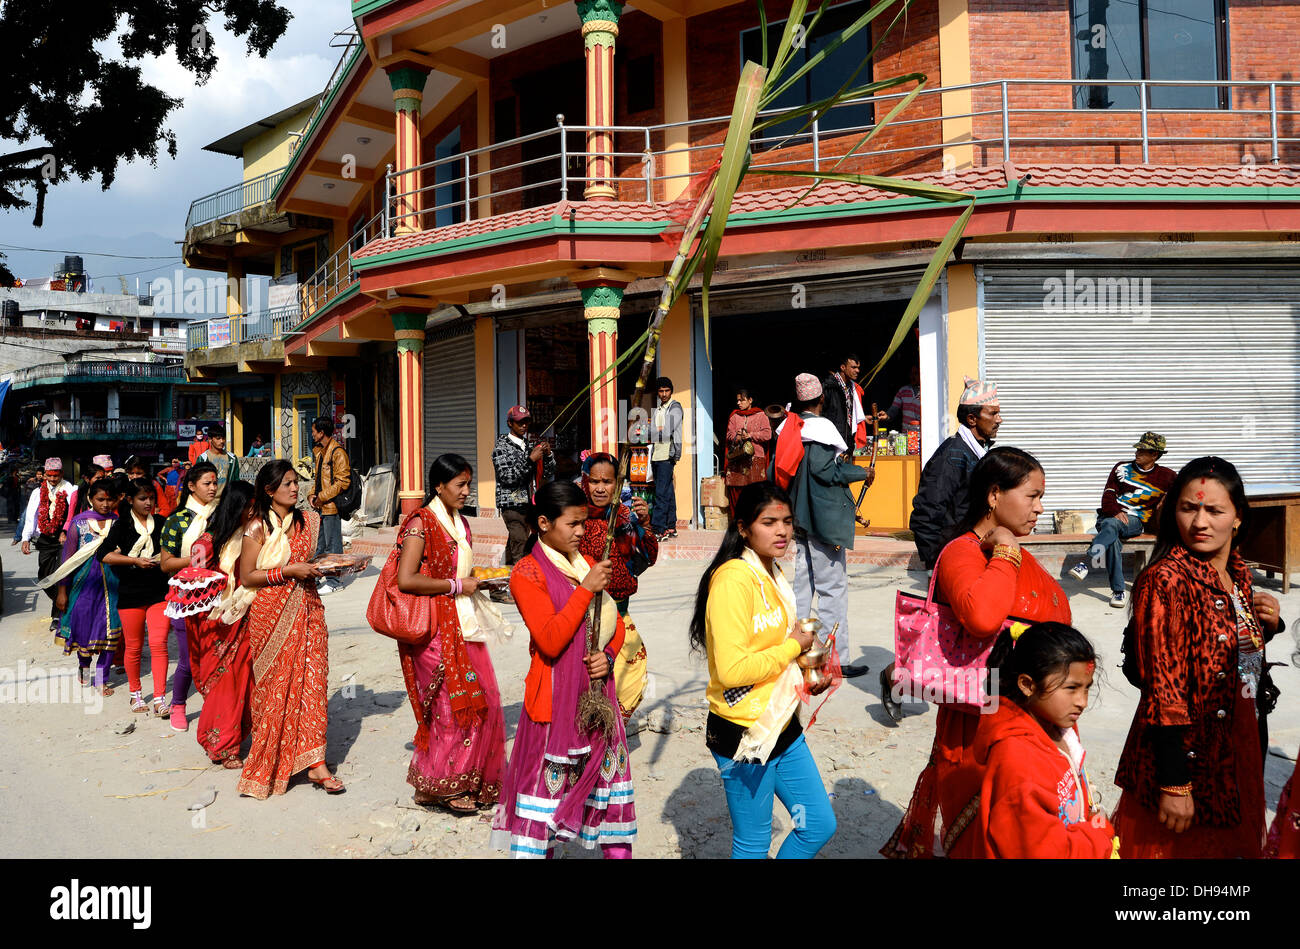 Mariage dans village rural, vallée de Pokhara, Népal Banque D'Images